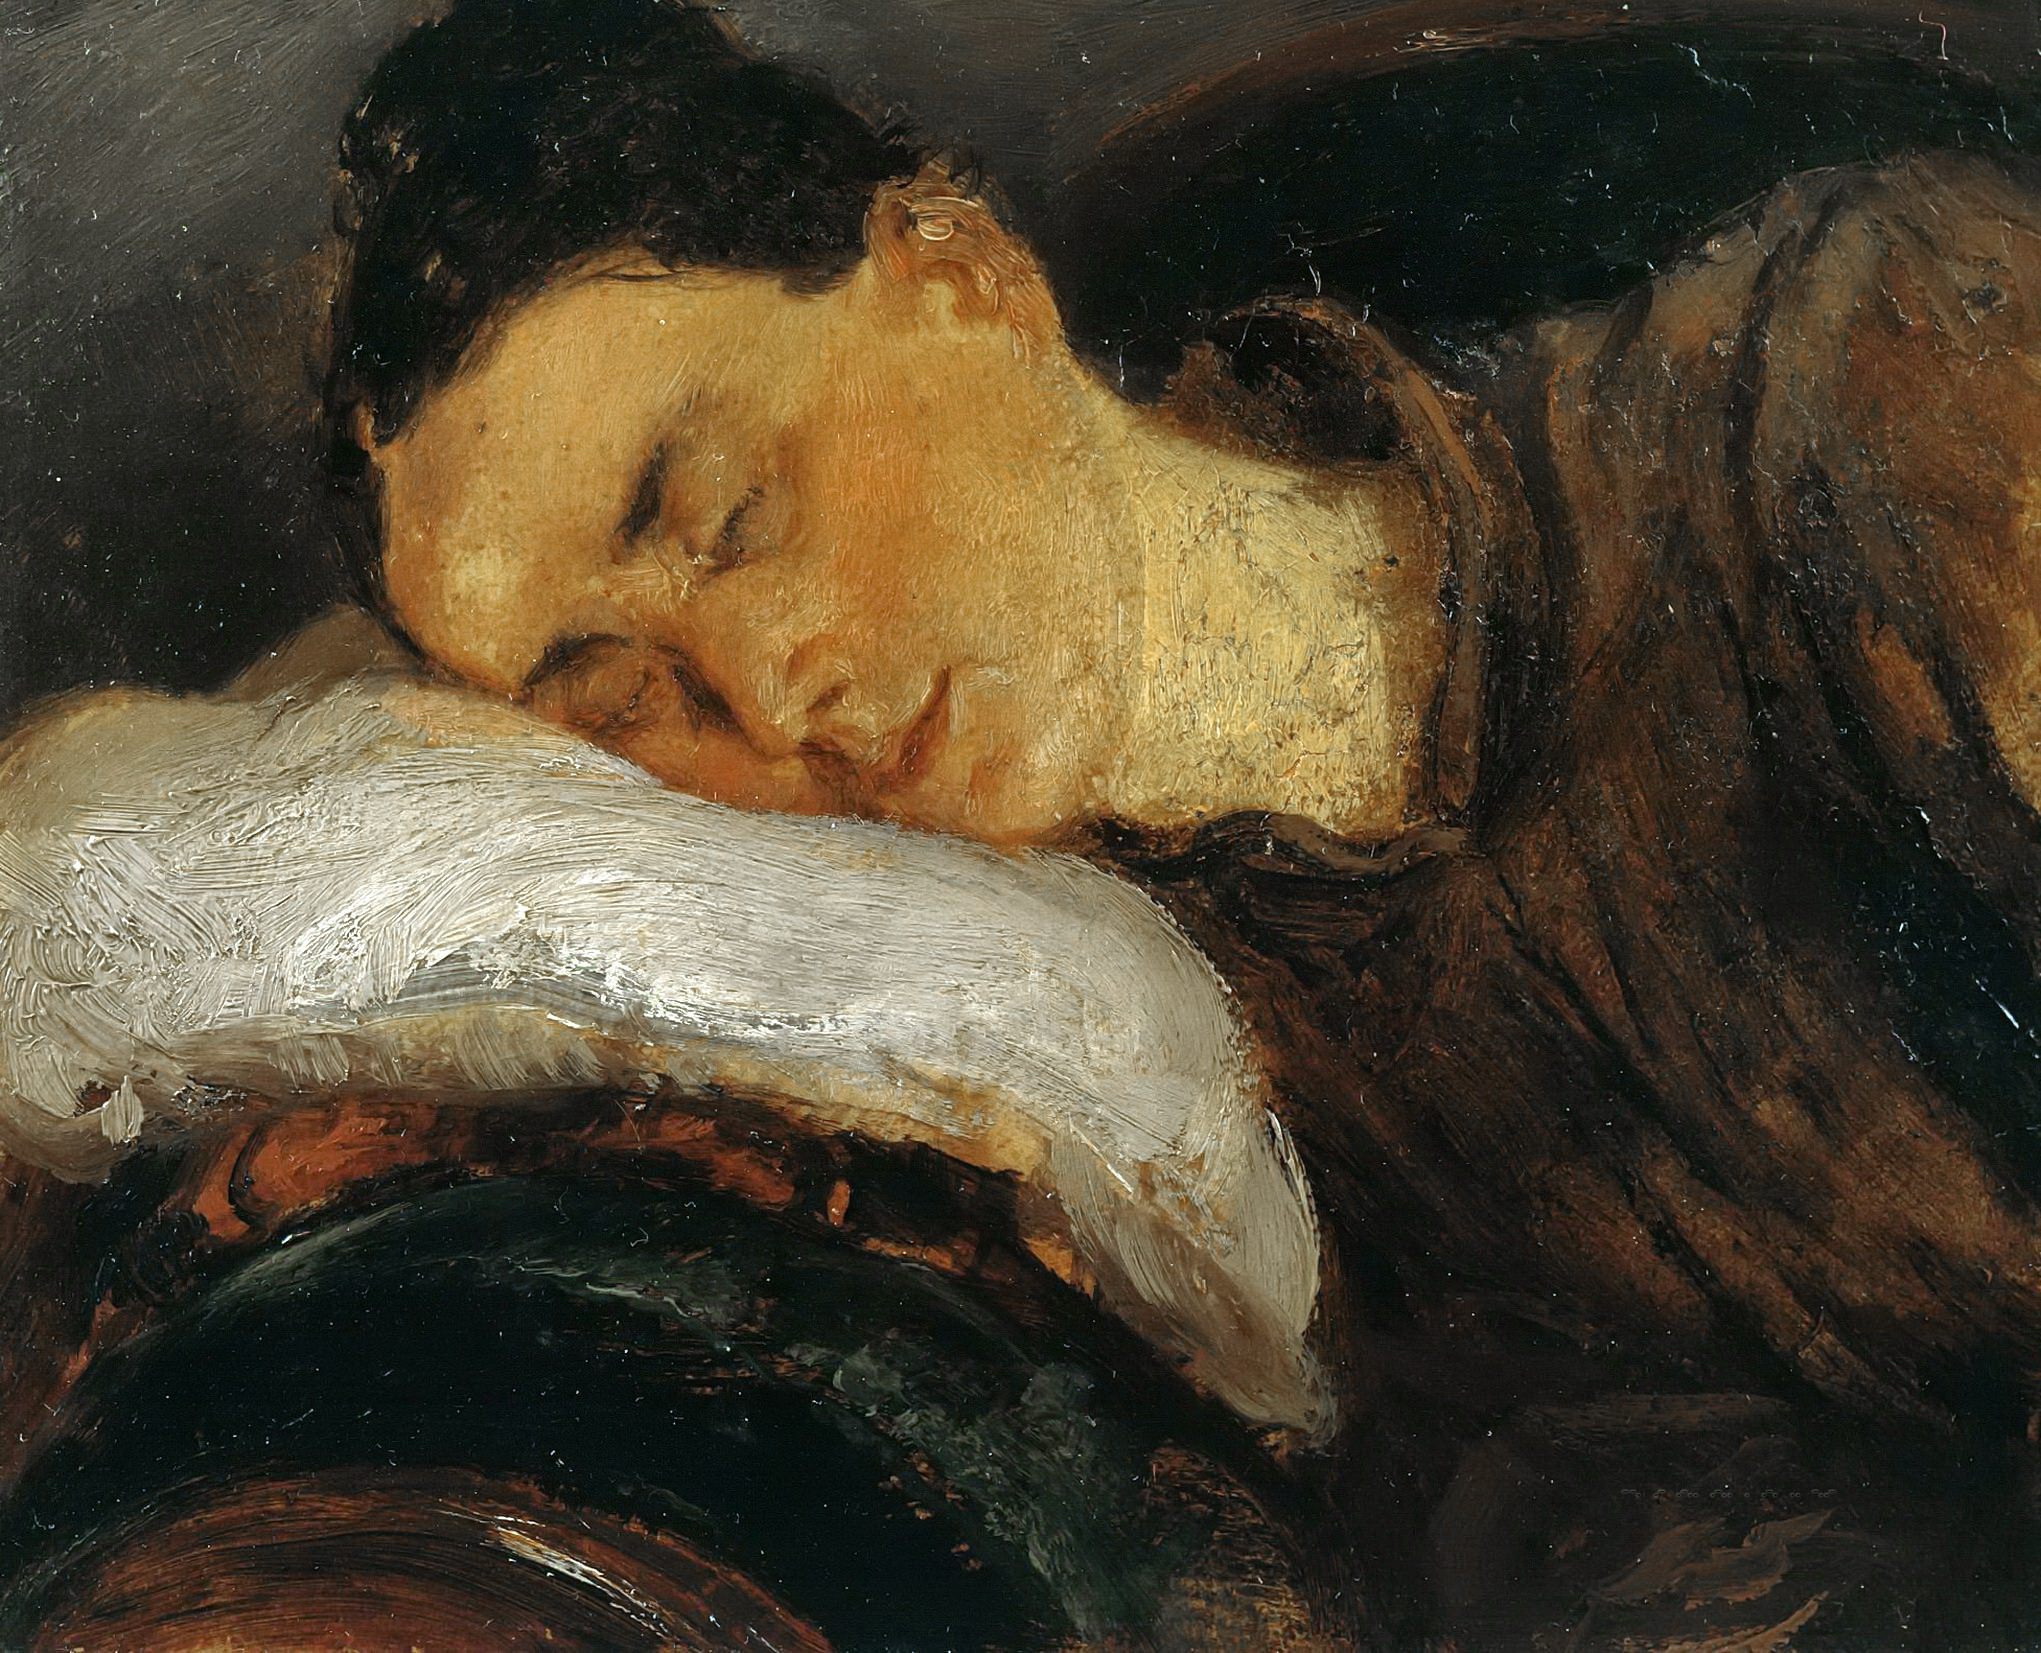 Адольф Менцель. "Спящая женщина". 1840-1850. Музей Берггрюна, Берлин.